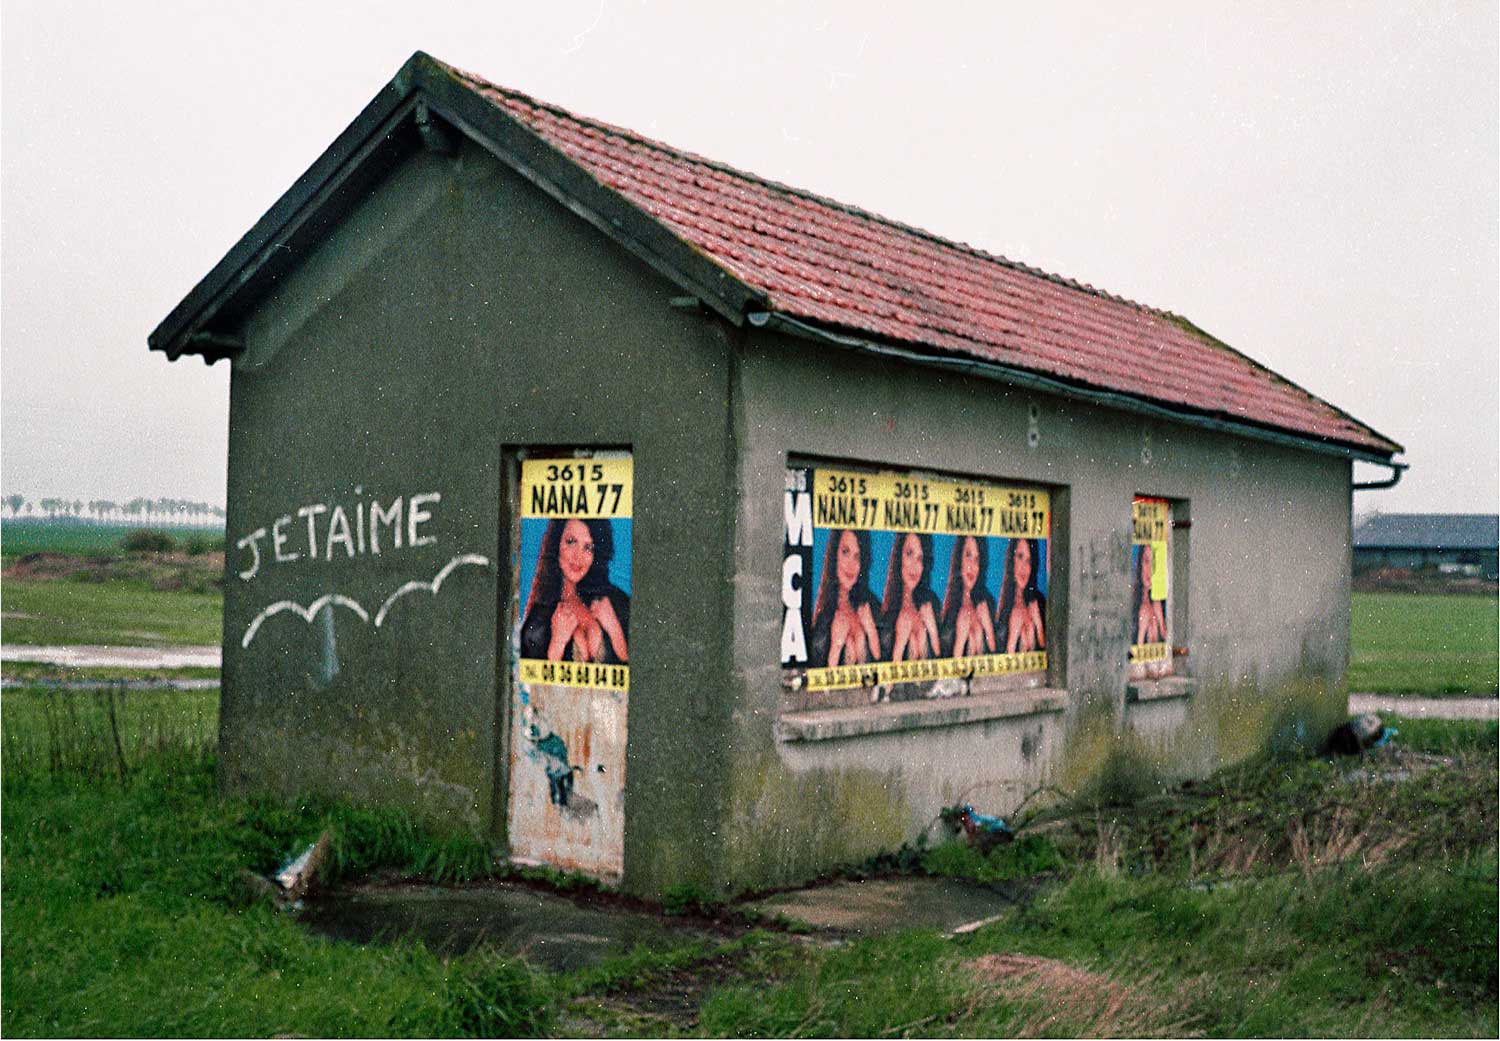 Bernard Bazile - Petite maison - Je t'aime - 3615 NANA 77, 1988-94/2019